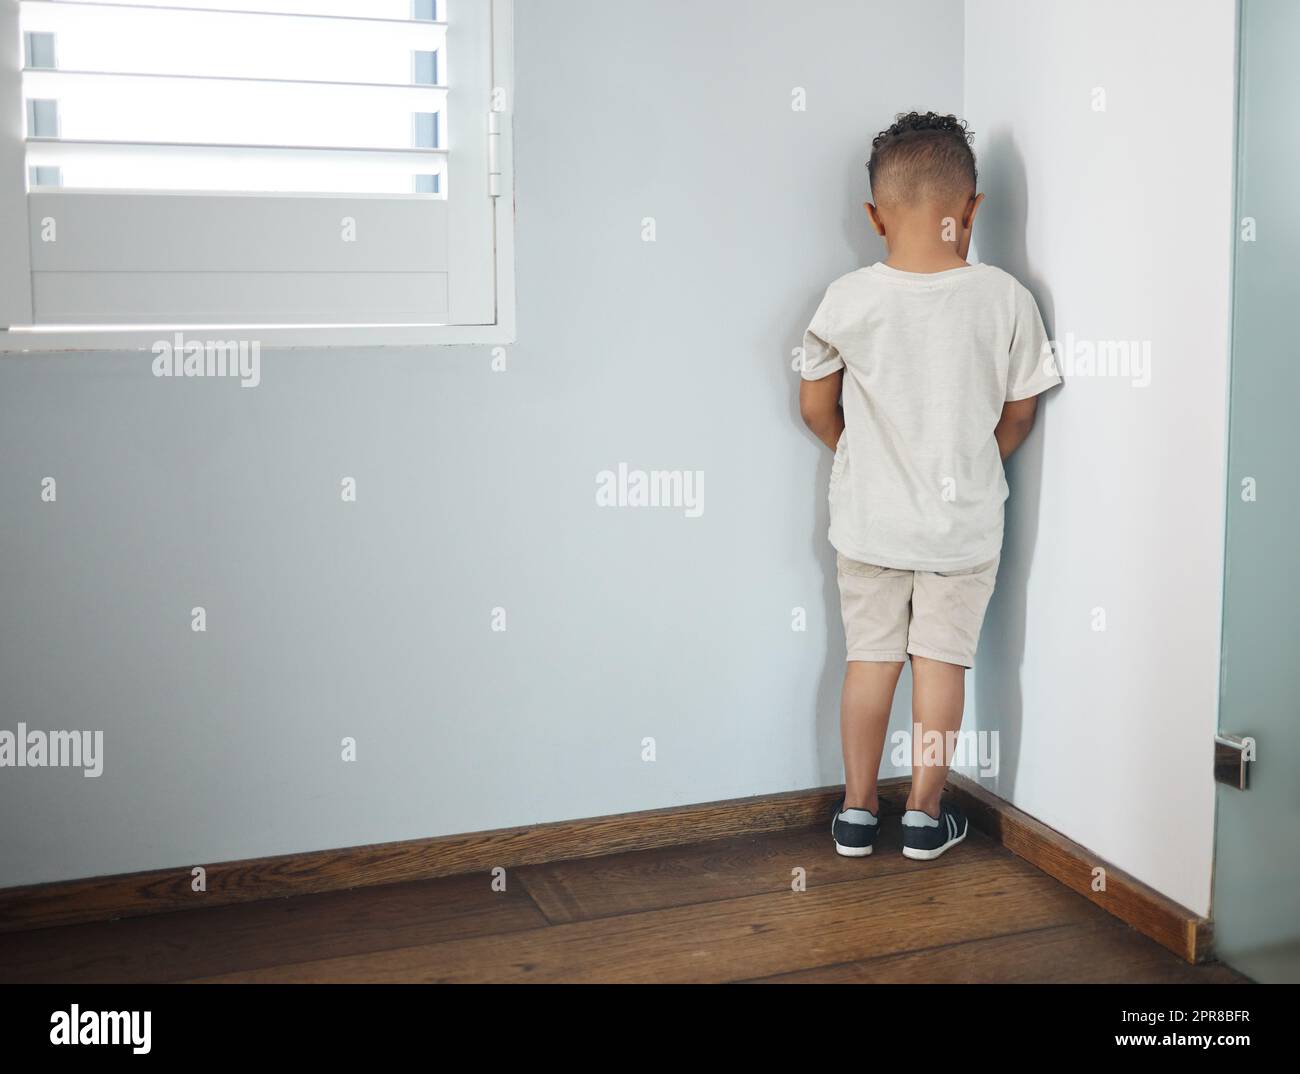 Er hasst es nicht, seinen Weg zu finden. Aufnahme eines unerkennbaren kleinen Jungen, der zur Wand zeigt und als Strafe in einem Zimmer zu Hause eingesetzt wird. Stockfoto